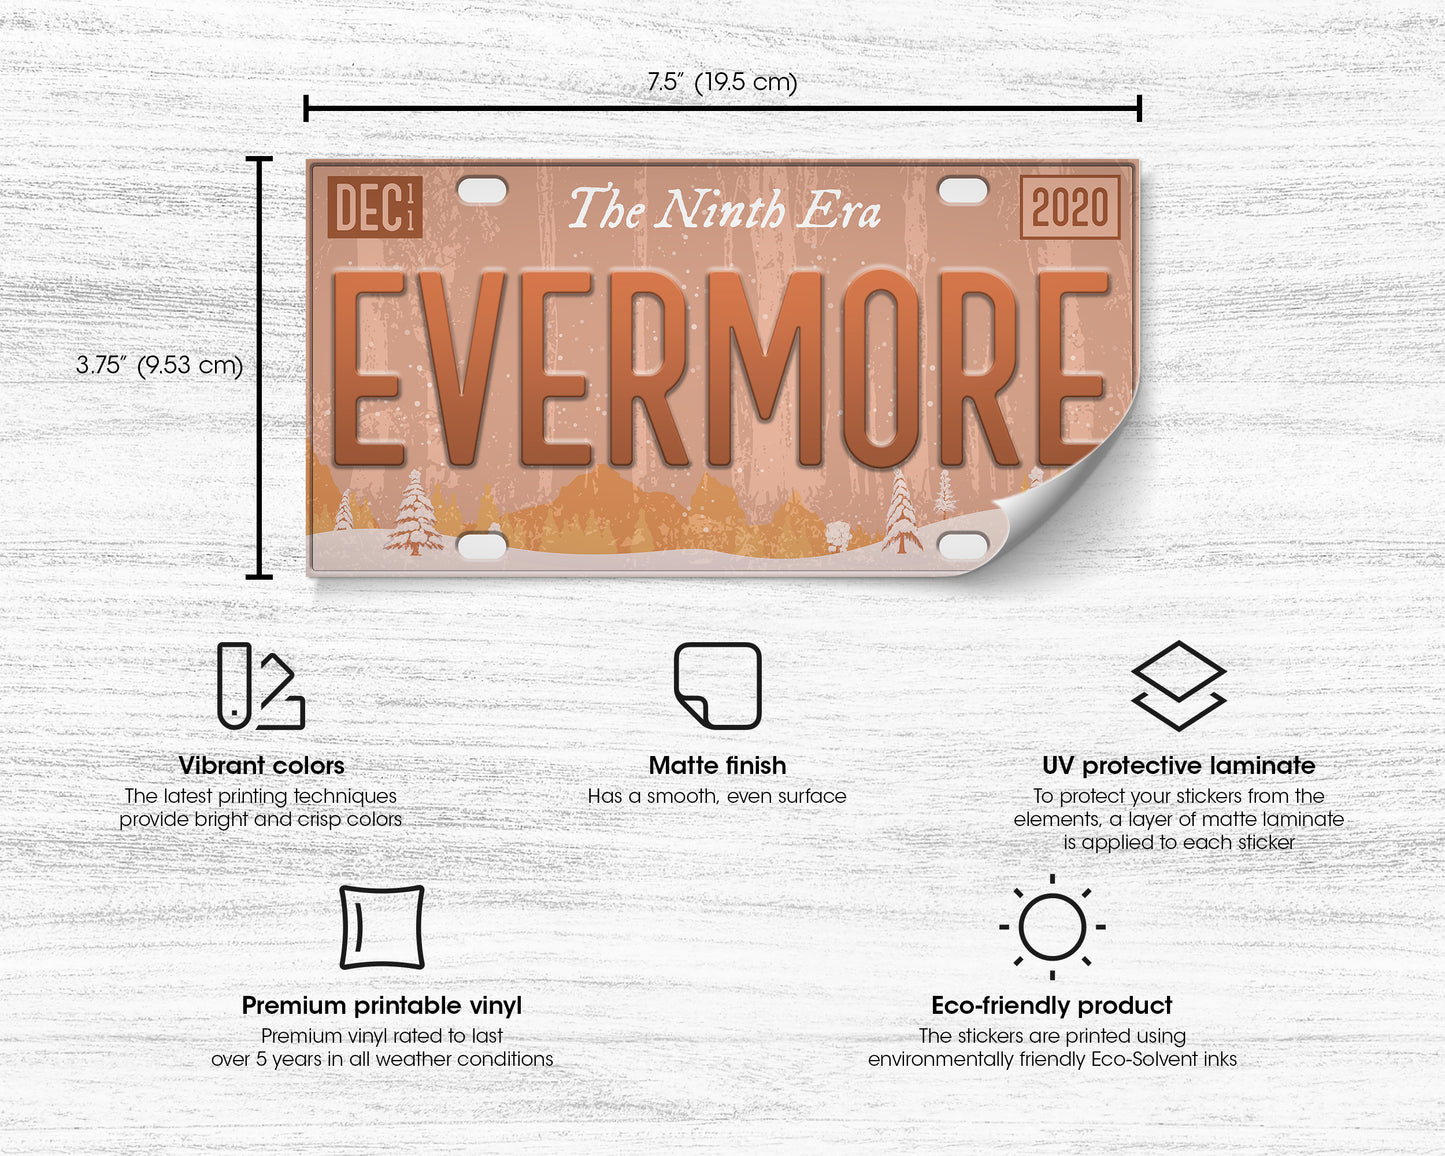 Evermore era bumper sticker